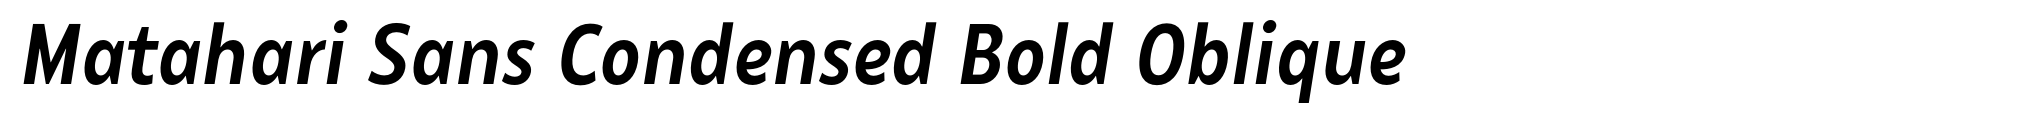 Matahari Sans Condensed Bold Oblique image